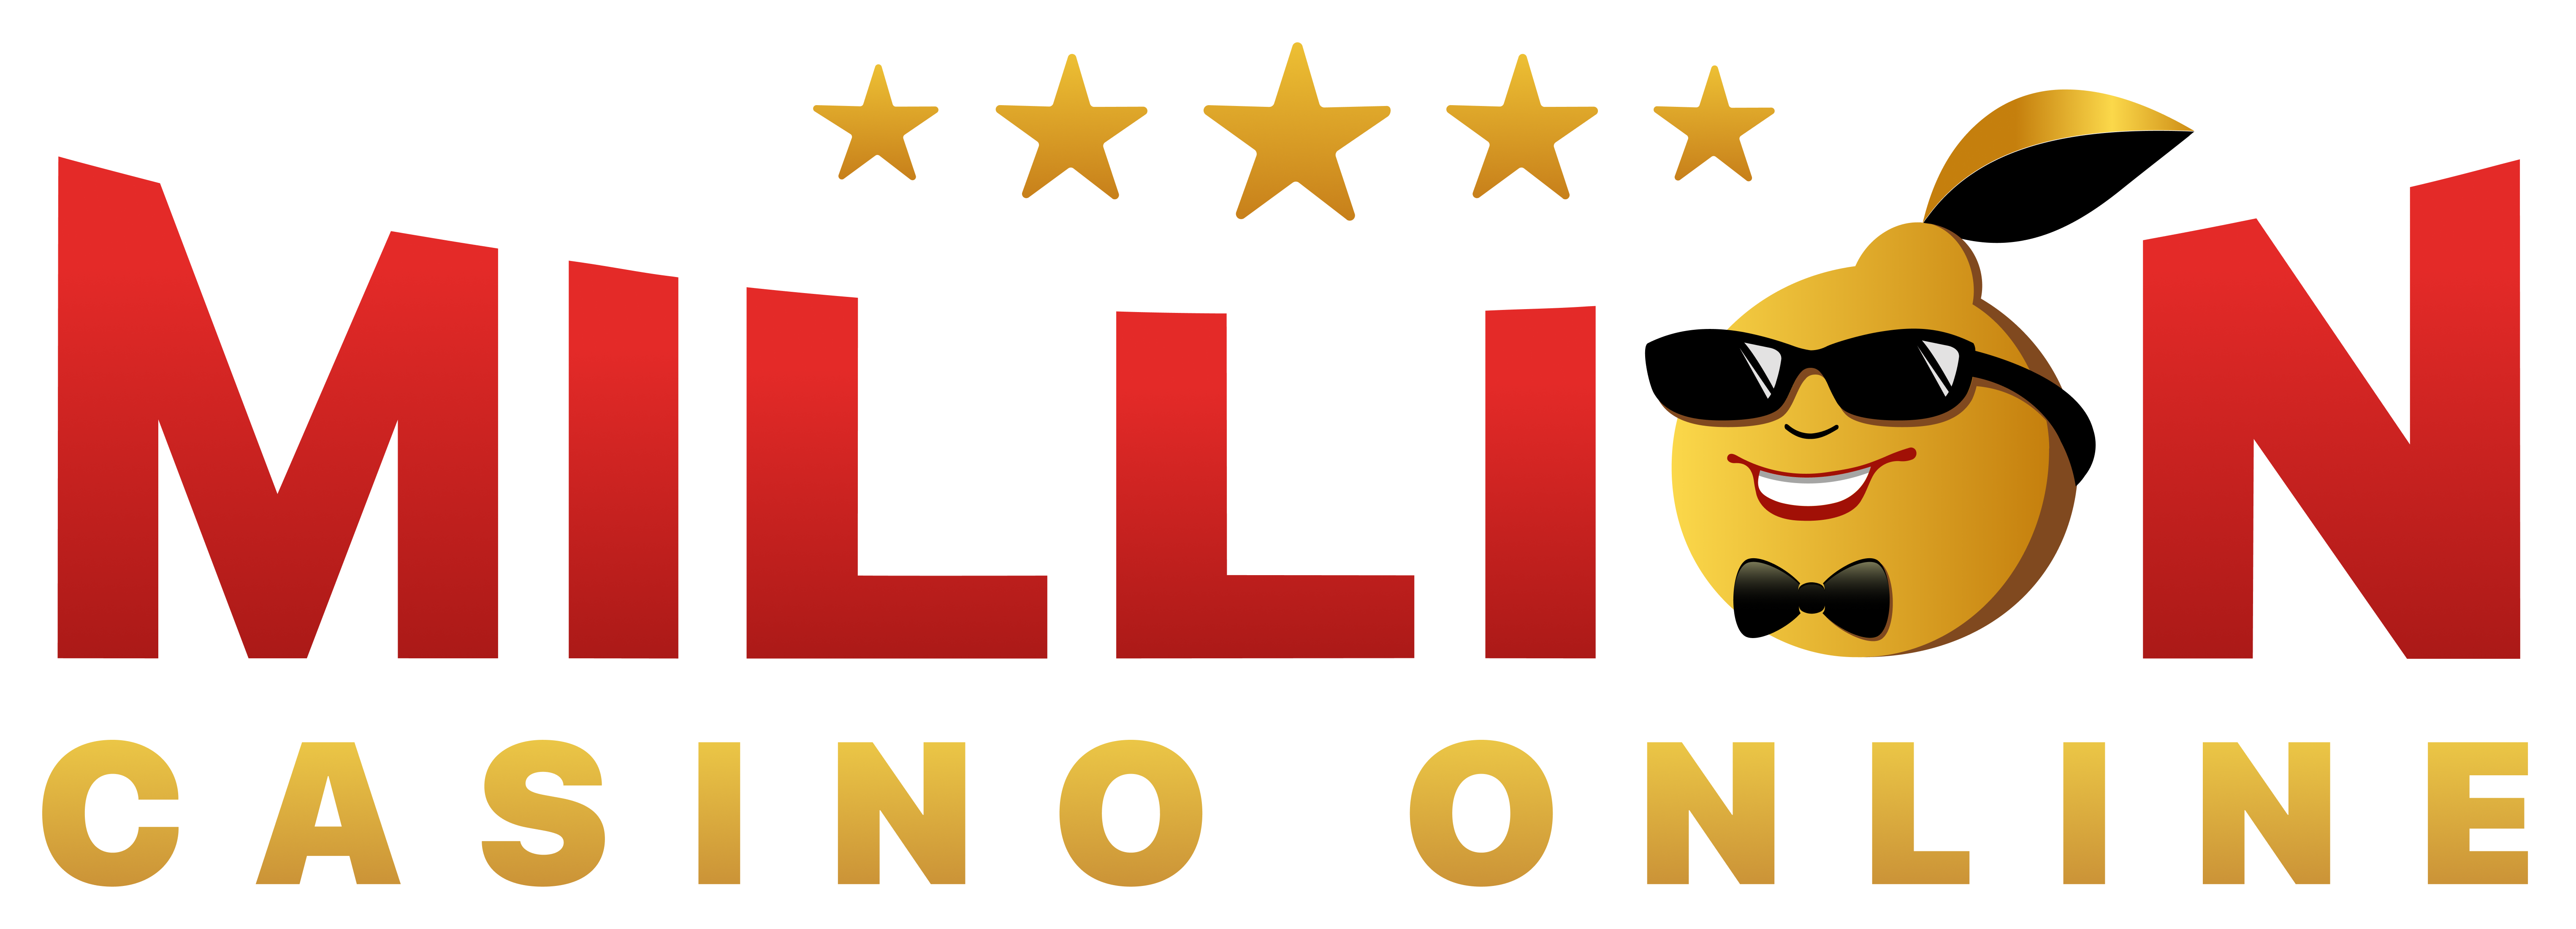 million-logo-with-description